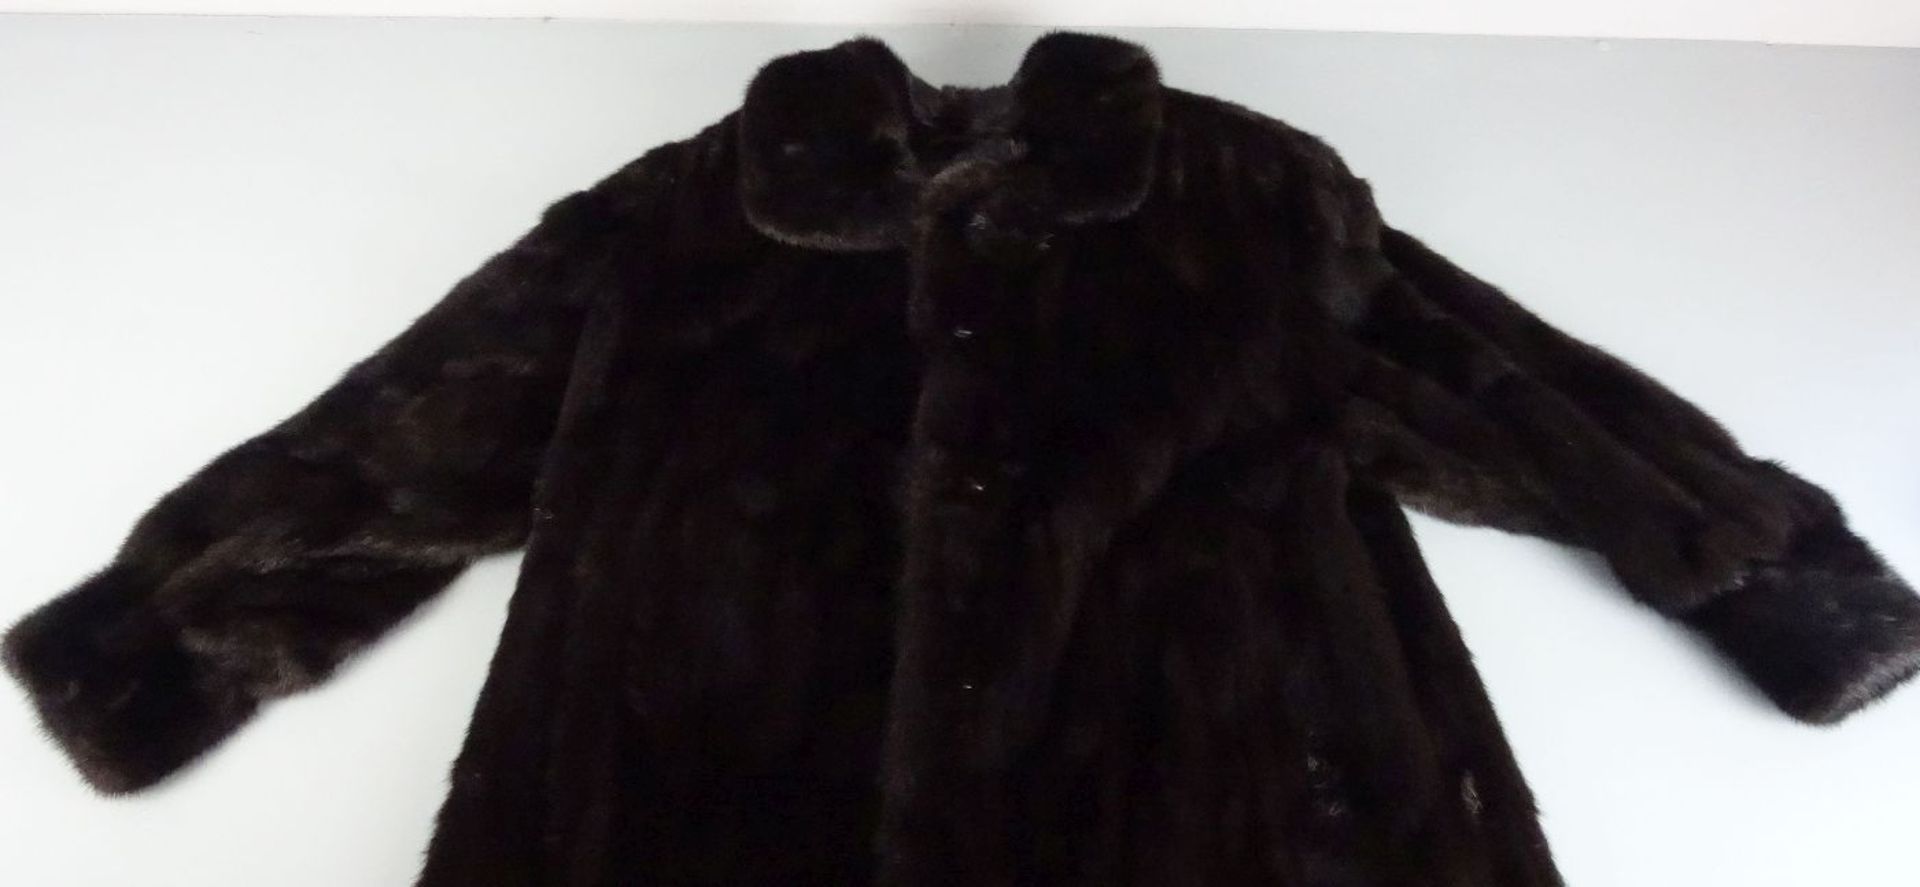 VINTAGE NERZ-MANTEL / dark brown (scanblack) mink coat, wohl 1980er Jahre, Größe ca. 38 / 40. - Bild 2 aus 3